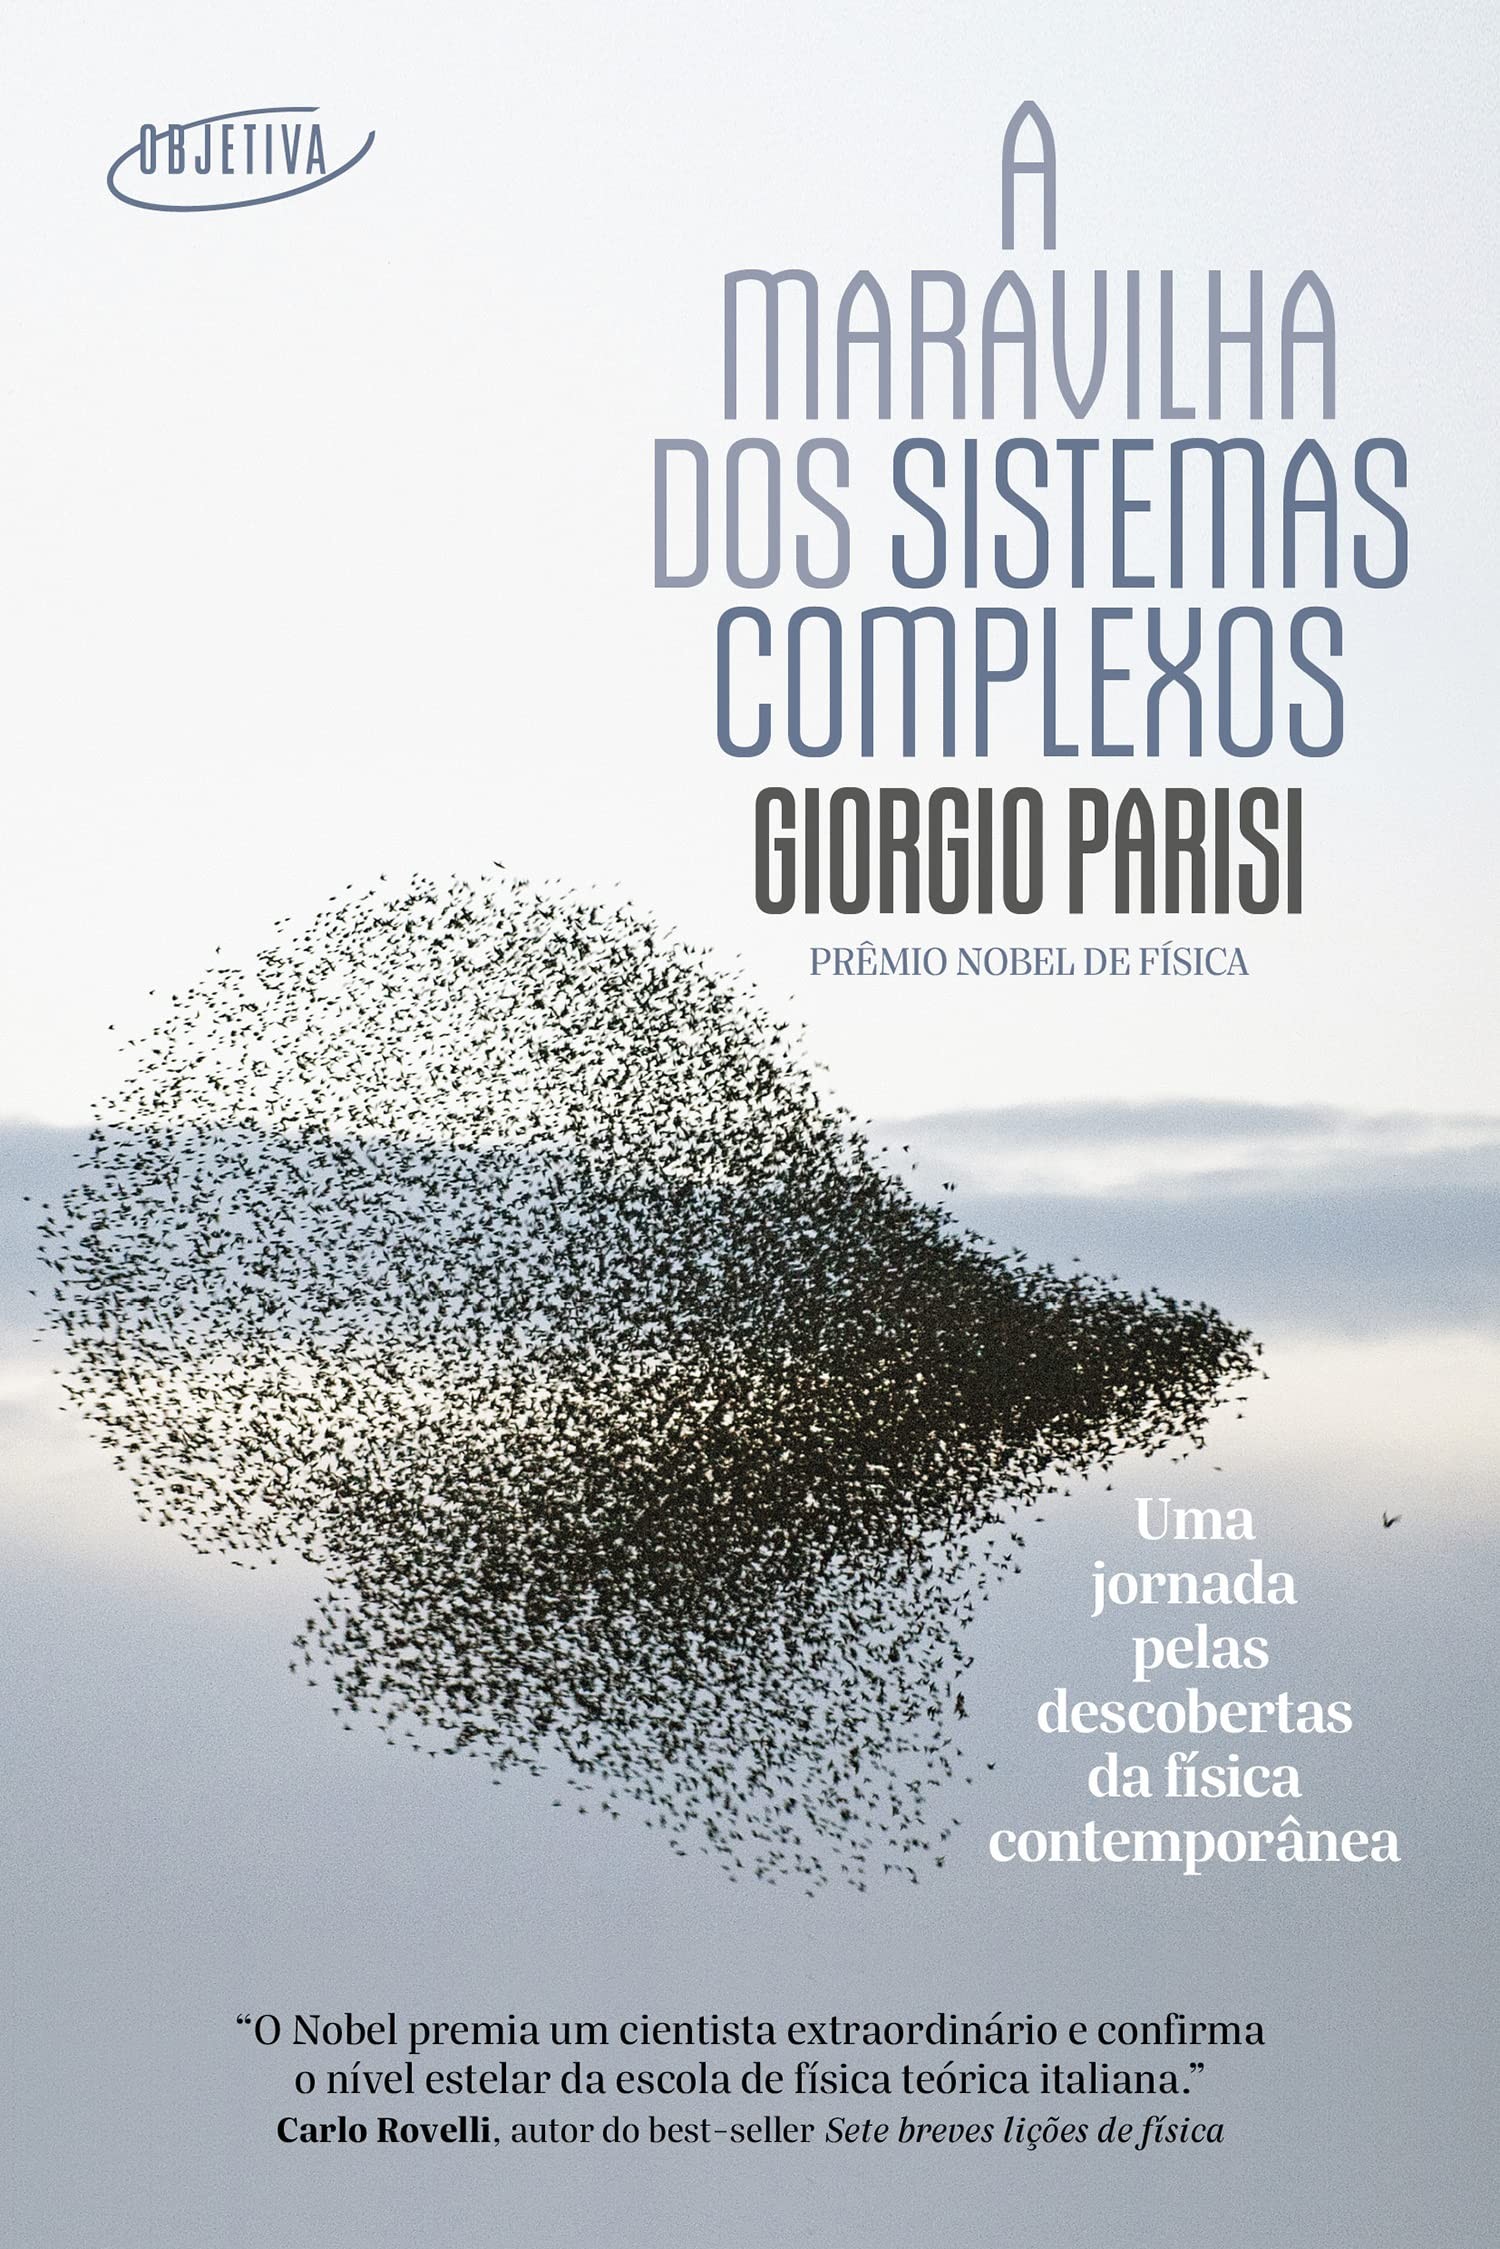 A maravilha dos sistemas complexos: Uma jornada pelas descobertas da física contemporânea, de Giorgio Parisi (Objetiva, 128 páginas • Impresso: R$ 49,90 | E-book: R$ 34,90) (Foto: Divulgação)